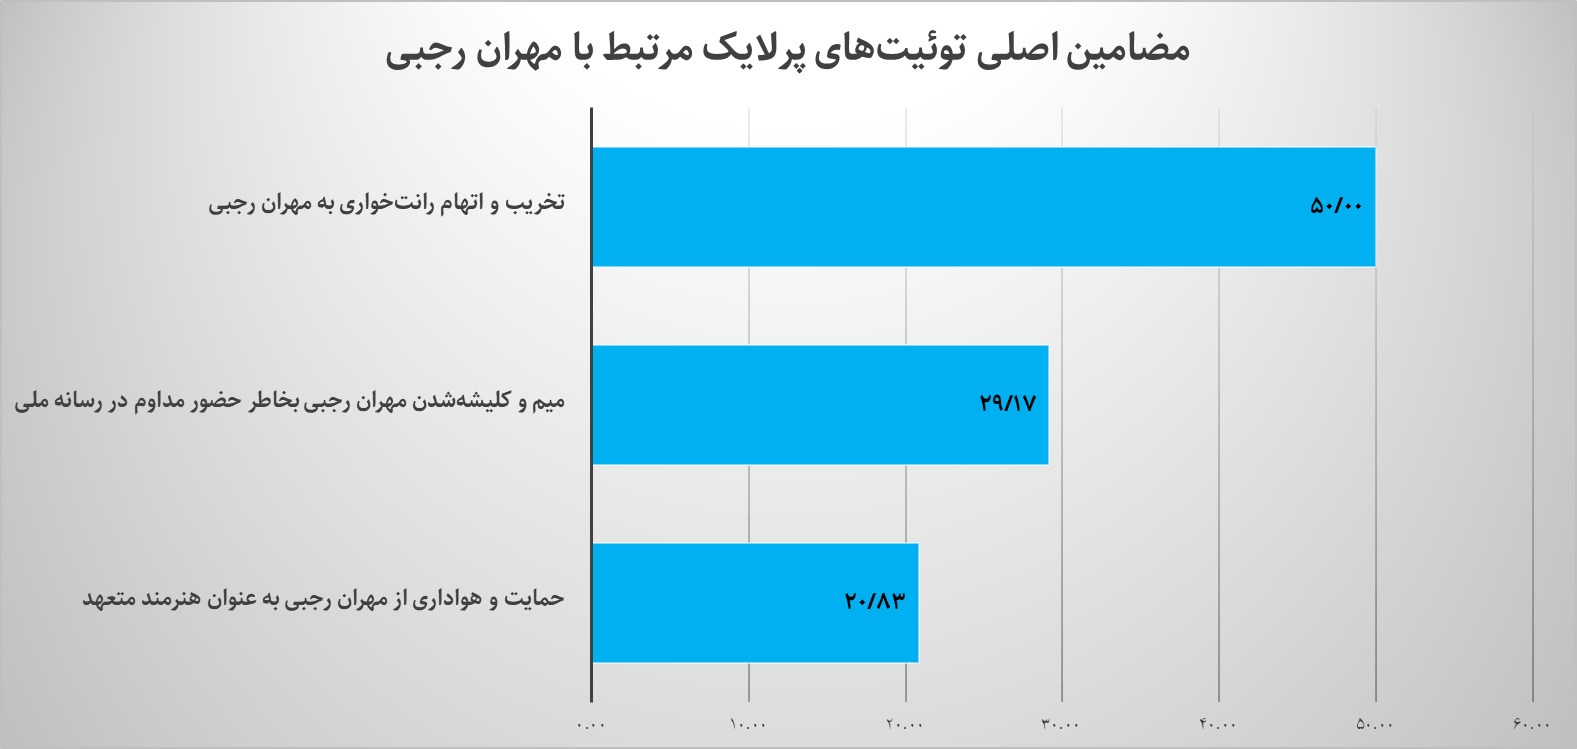 کدام بازیگران سینما بیشتر در توئیتر فارسی مورد بحث قرار گرفتند؟